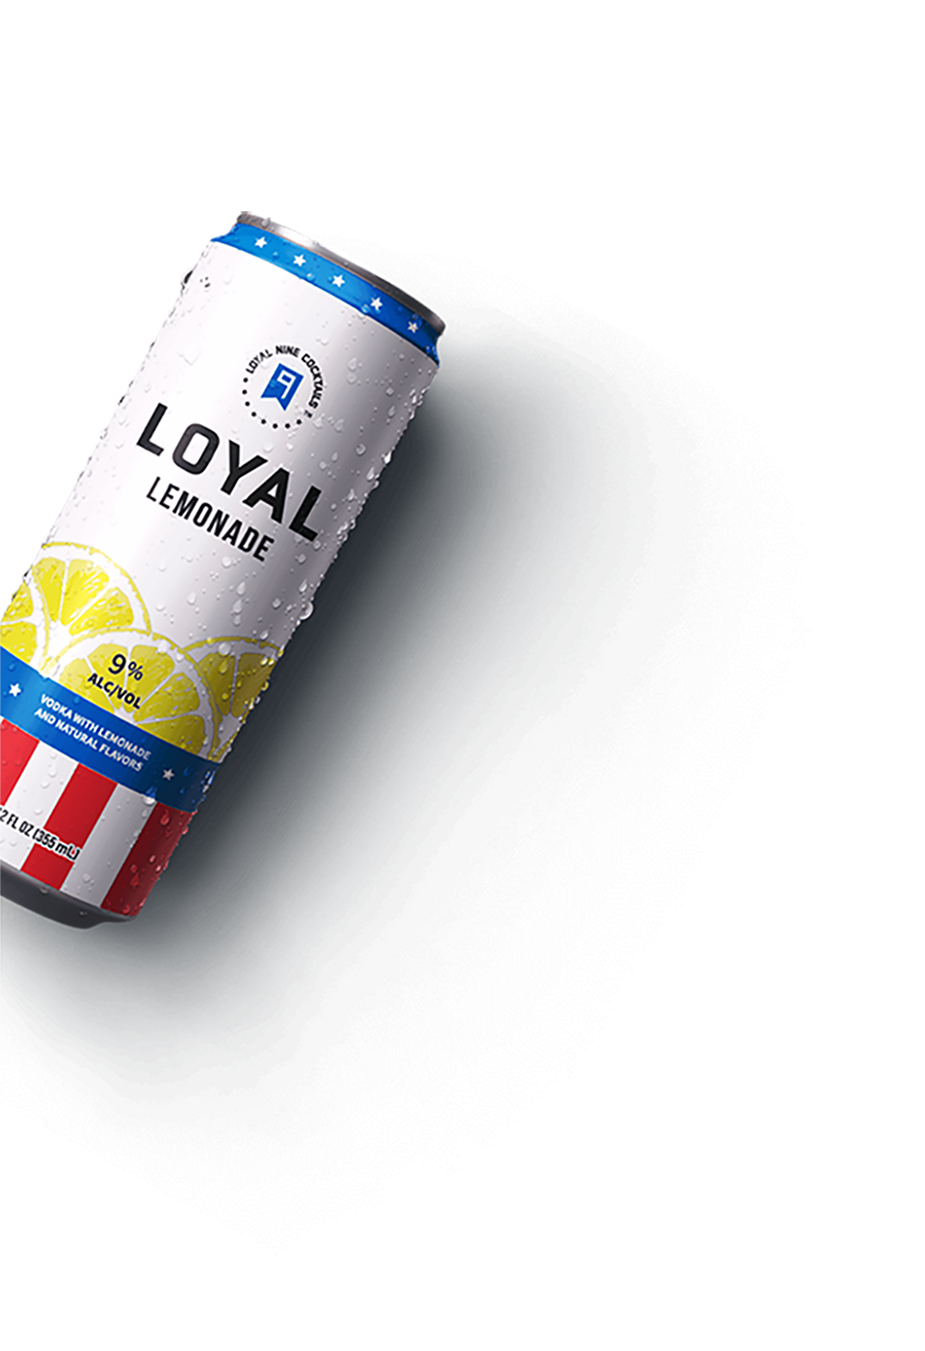 Can of Loyal 9 Lemonade